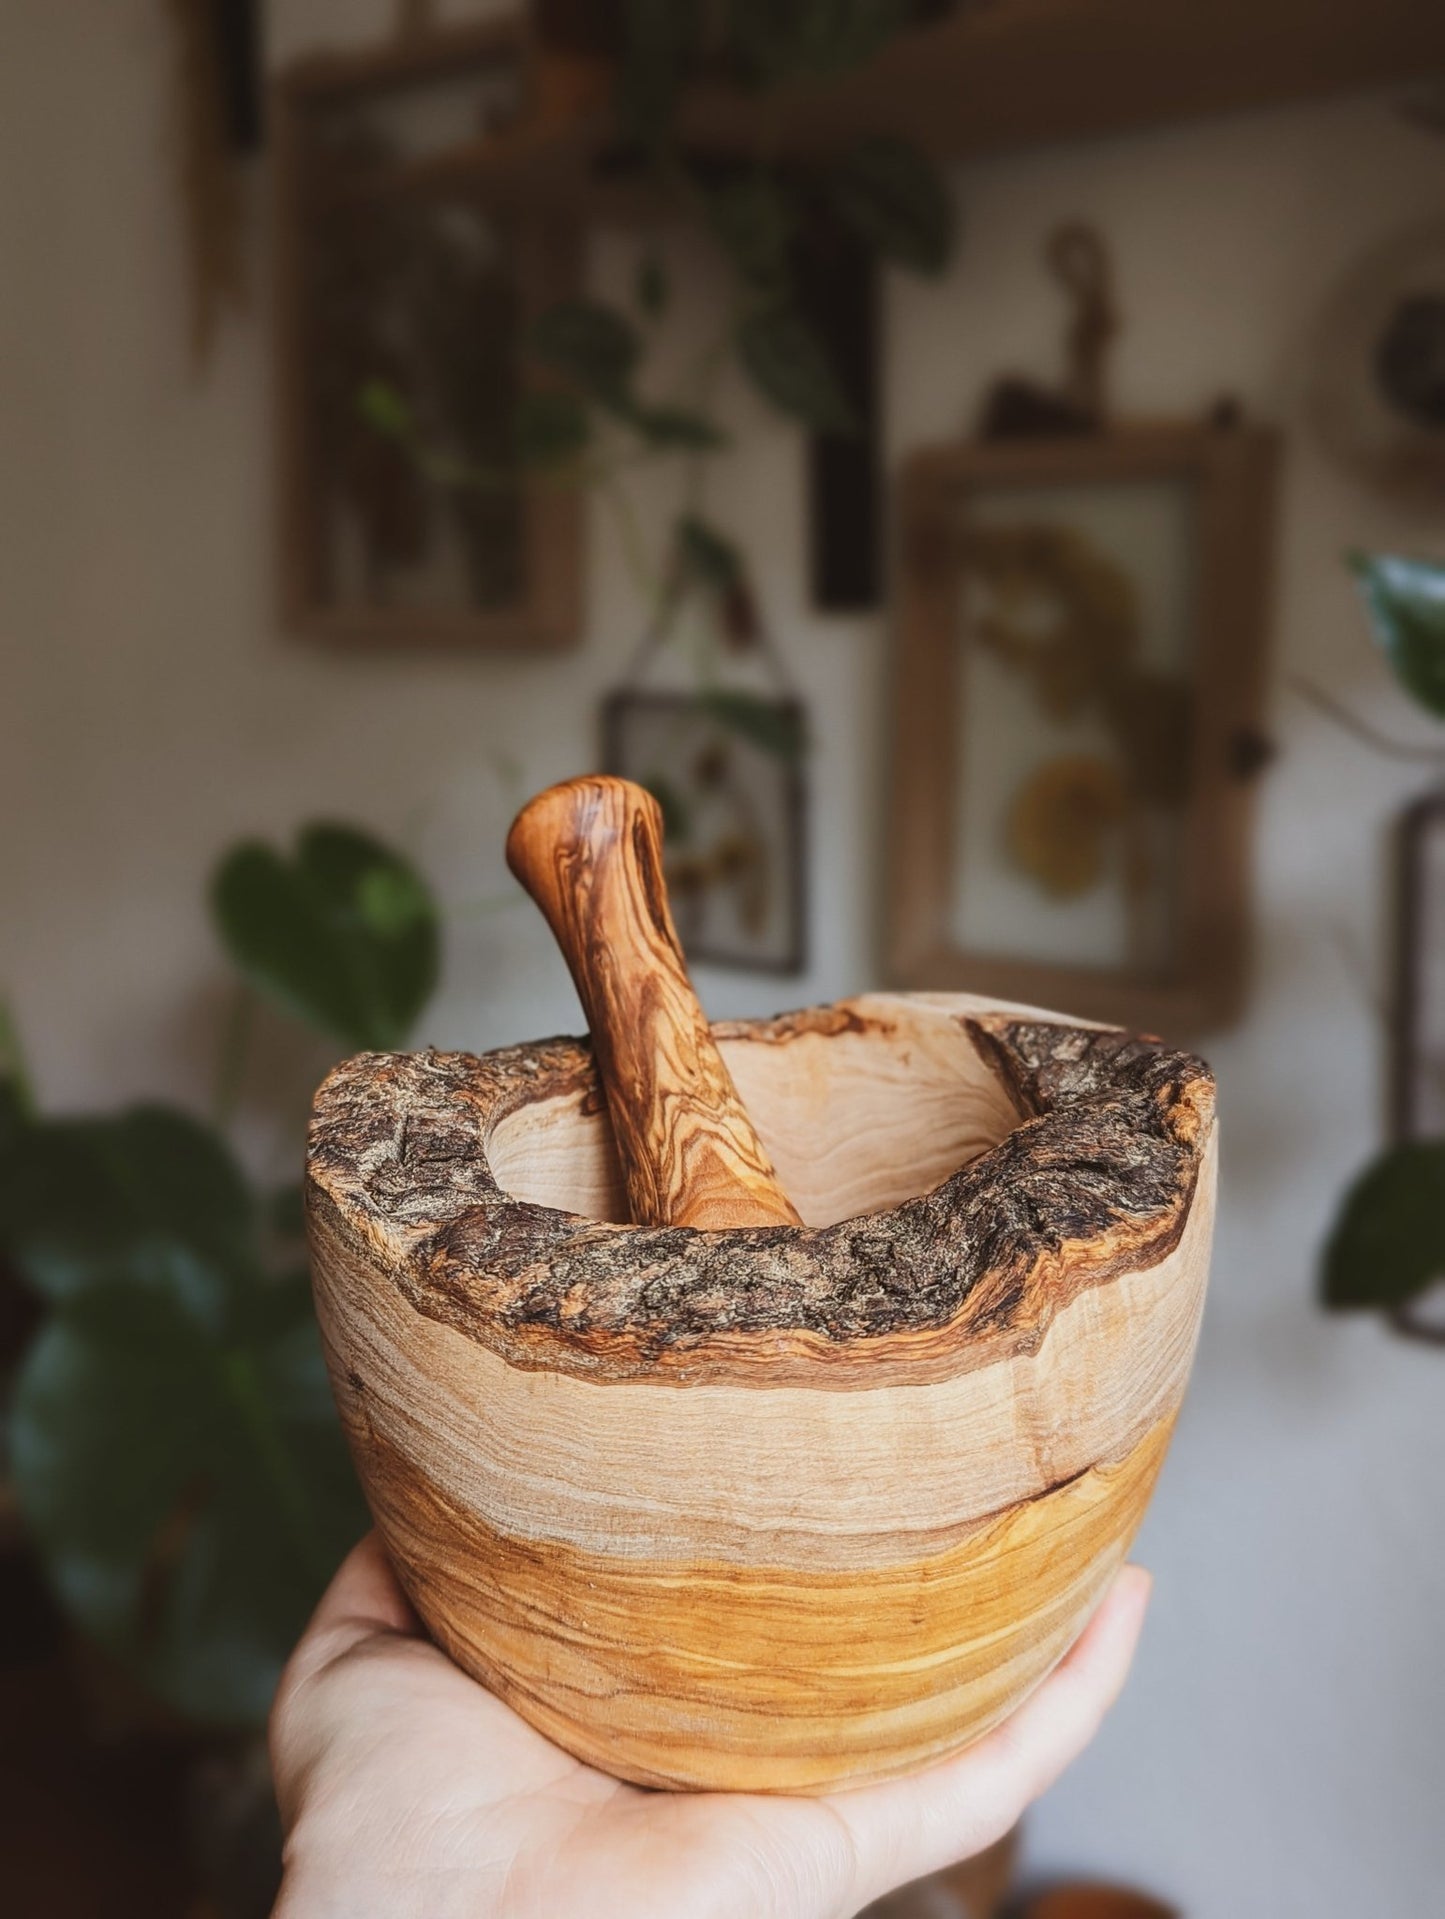 Mörser & Stößel aus Olivenholz - Rustikales, handgefertigtes Mörser- und Stößelset aus natürlichem Holz,  gehalten in einer Hand, im Hintergrund sieht man eine Wand behangen mit Pflanzen